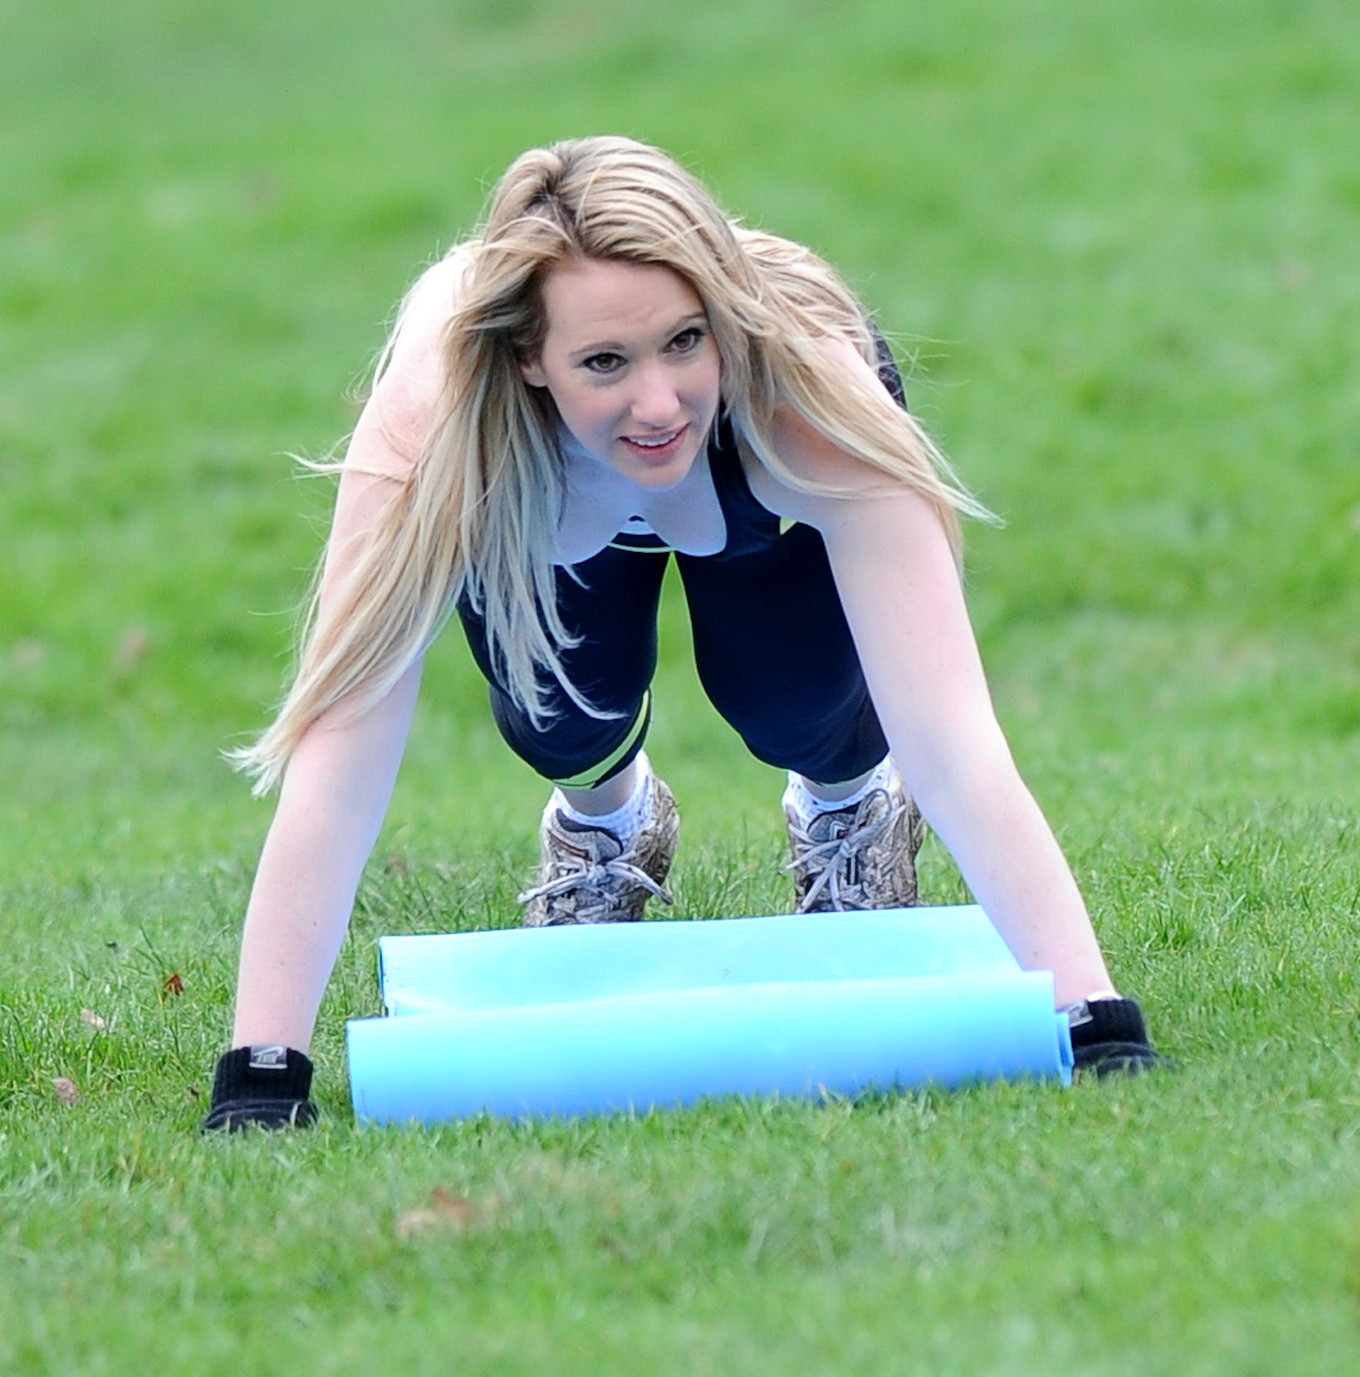 Rebecca ferdinando en mallas deportivas haciendo ejercicio en un norte de londres
 #75243337